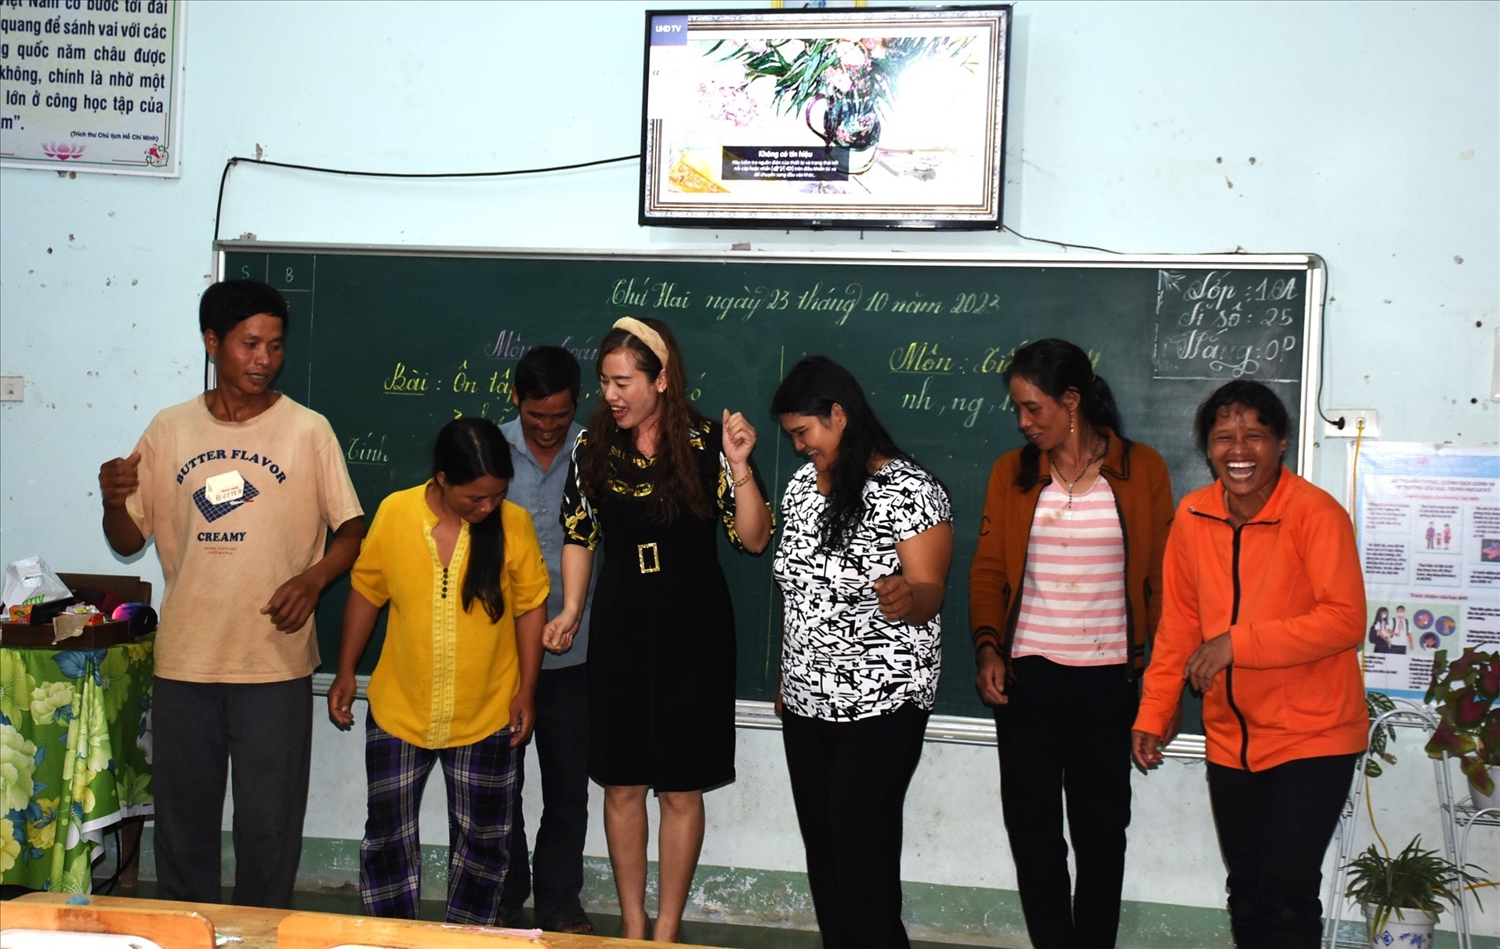 Thầy cô tổ chức những hoạt động văn hóa, văn nghệ cho học viên lớp xóa mù chữ trong giờ giải giao